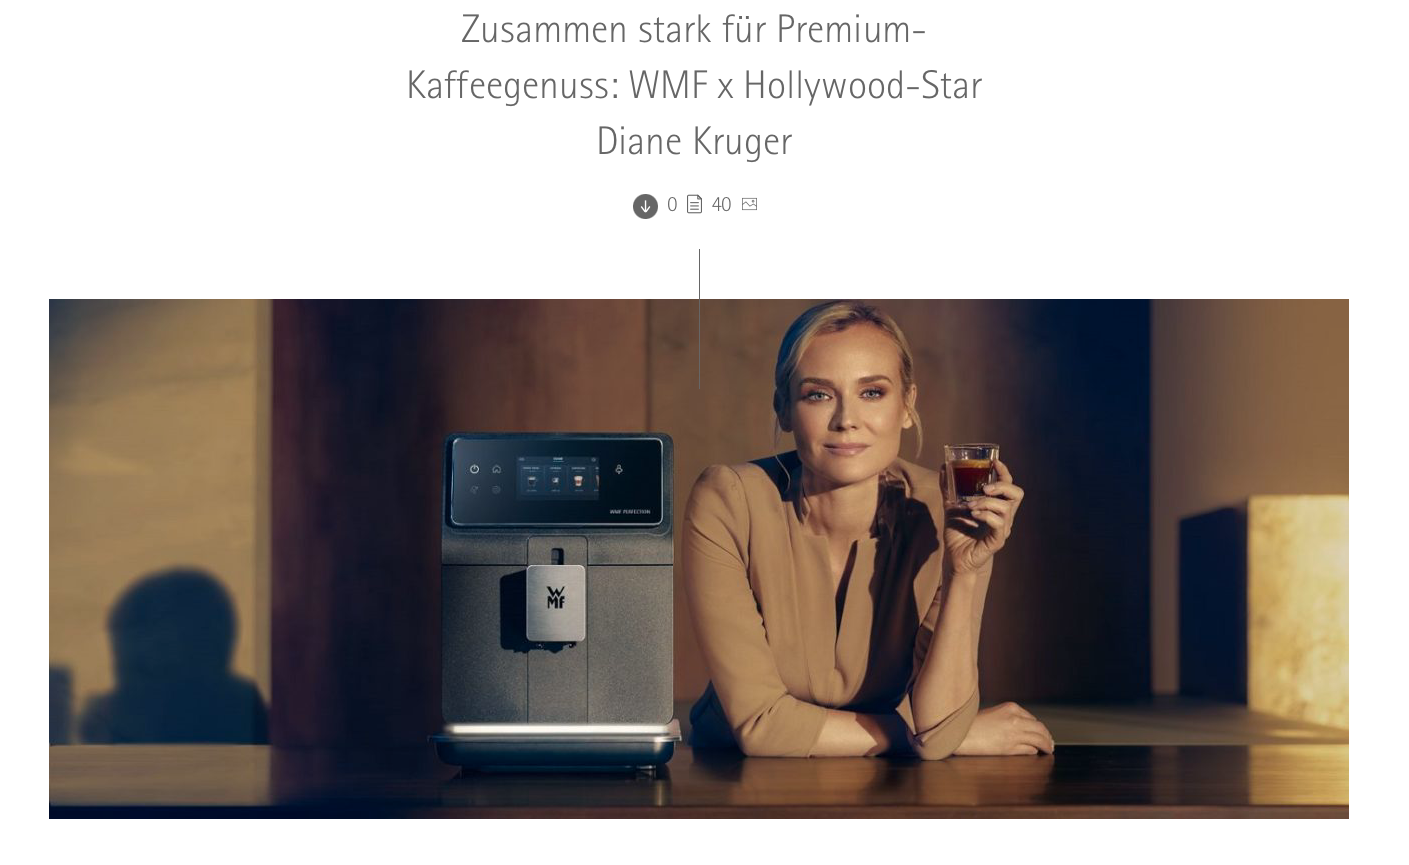 Diane Kruger als Brand Ambassador